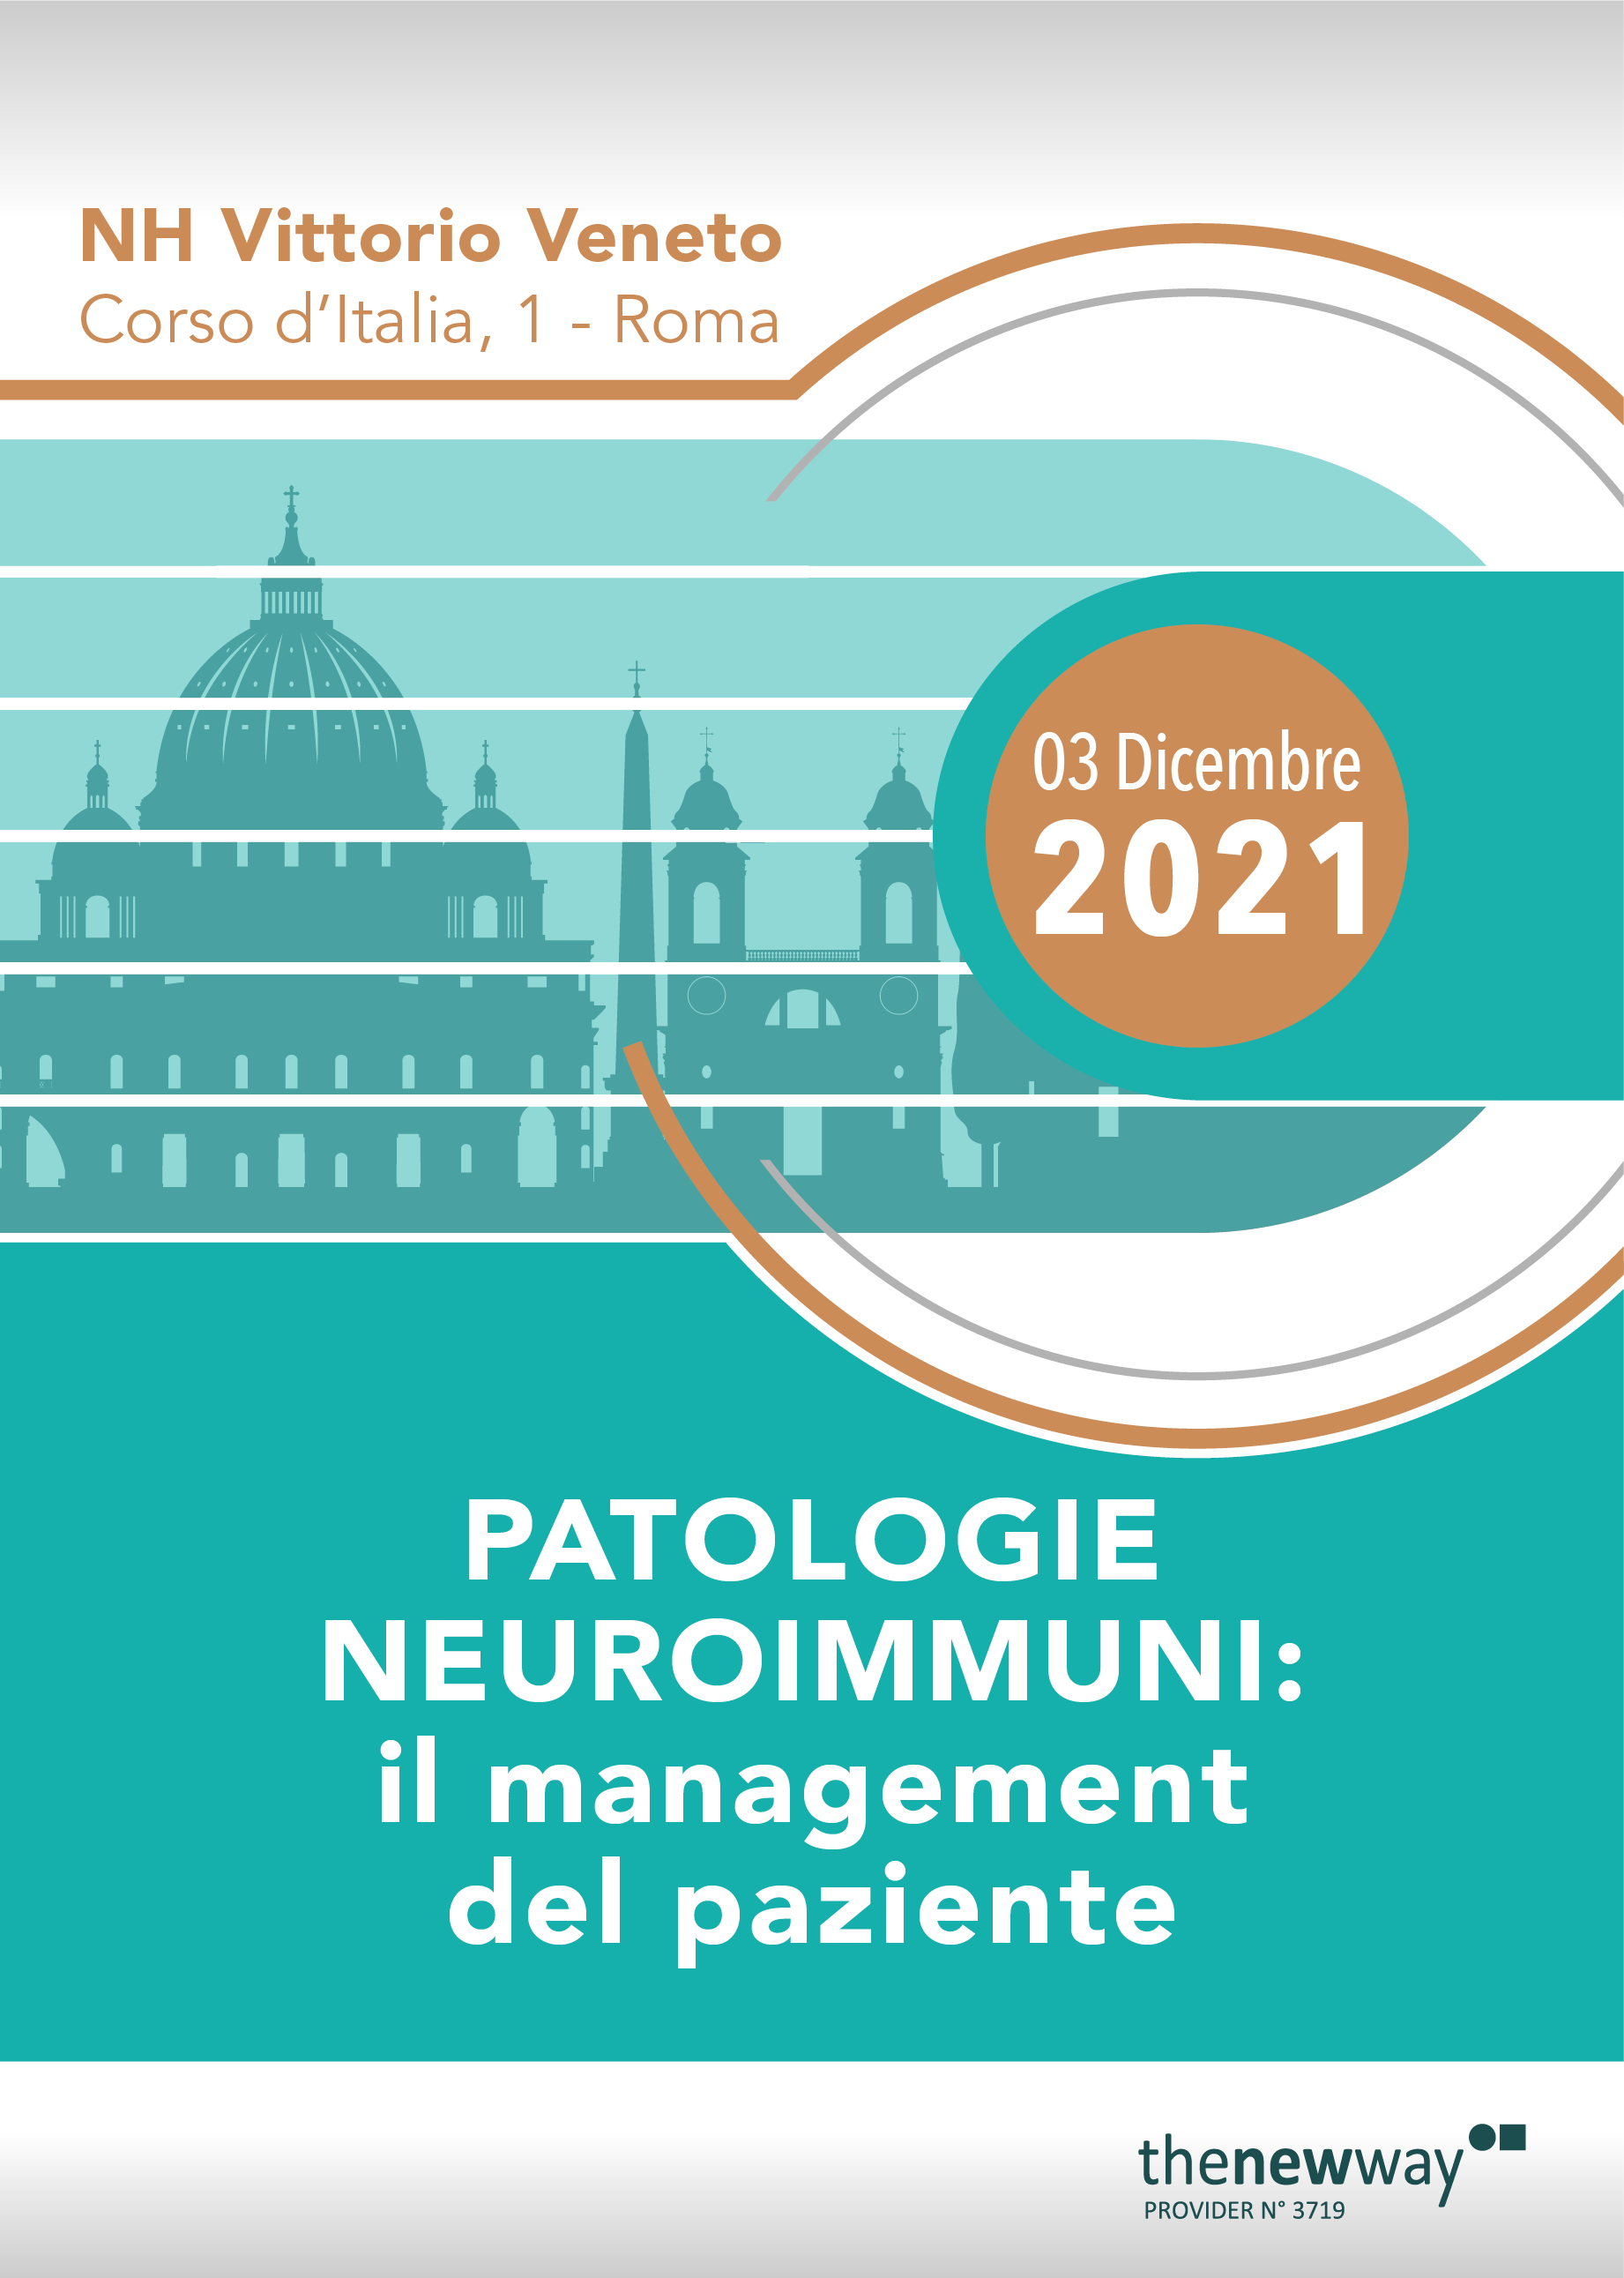 Patologie neuroimmuni:  il management del paziente - Roma, 03 Dicembre 2021